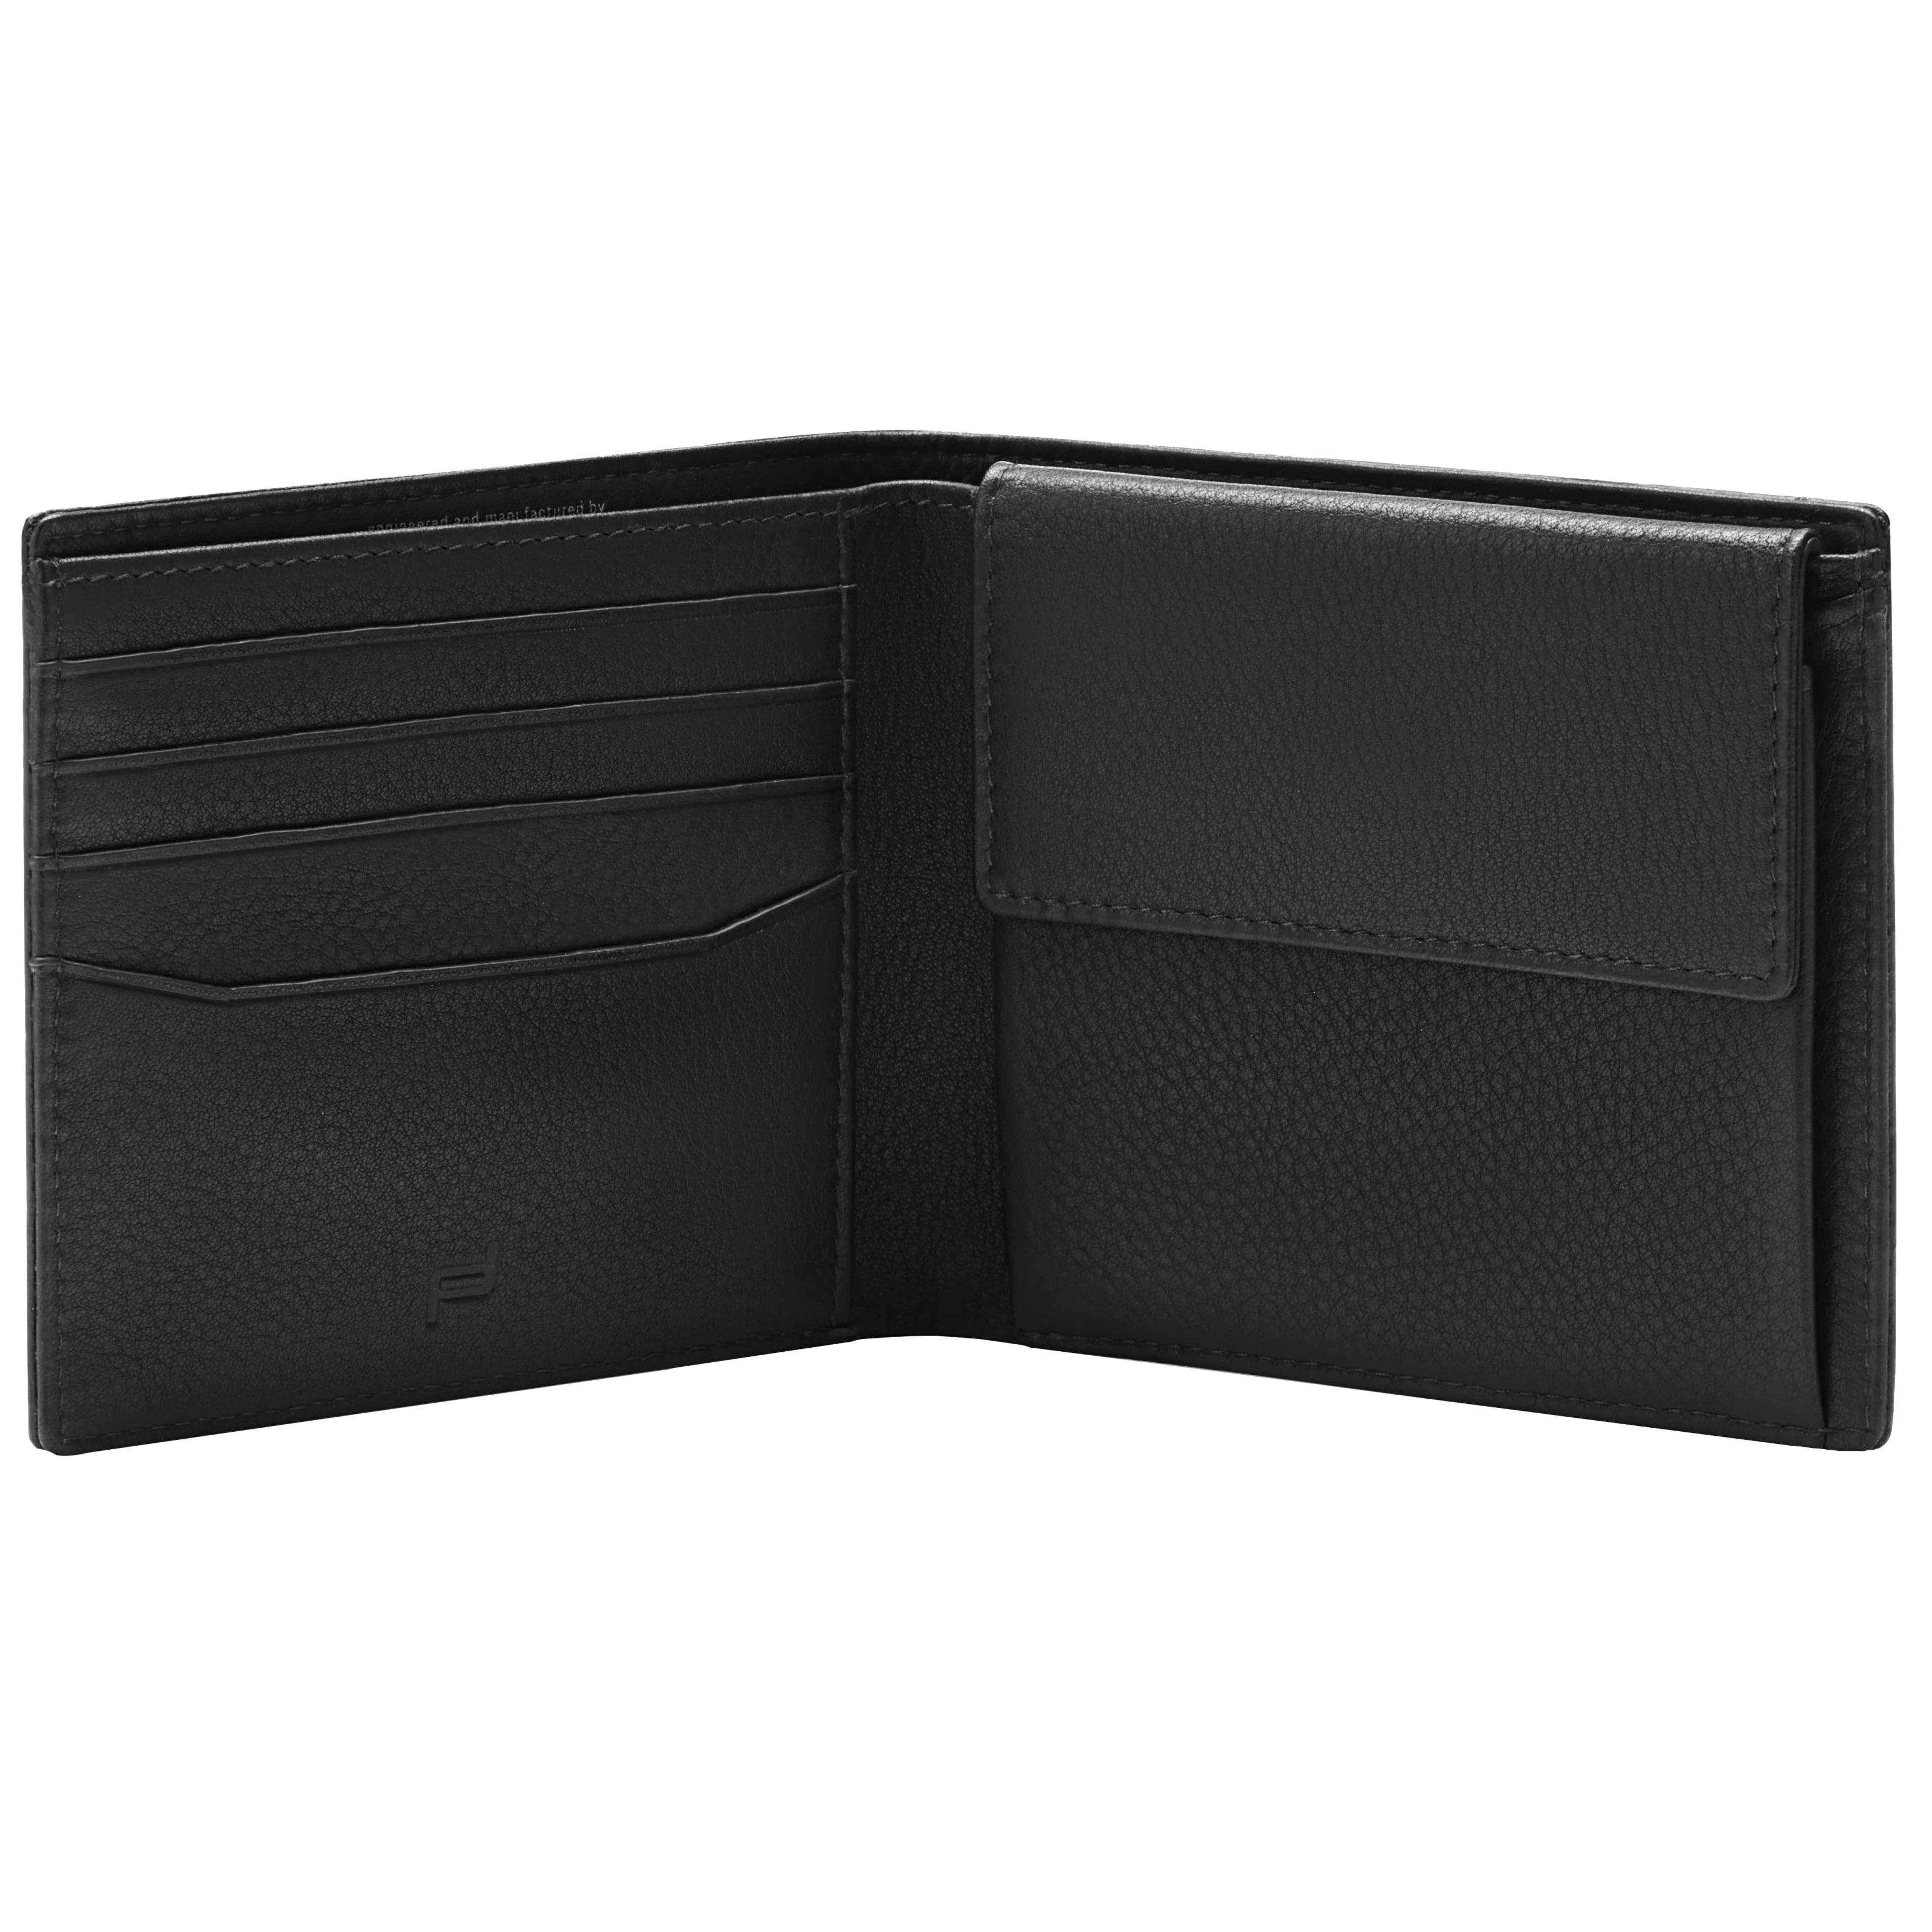 Porsche Design Accessories Business Wallet 4 RFID 11 cm - Black